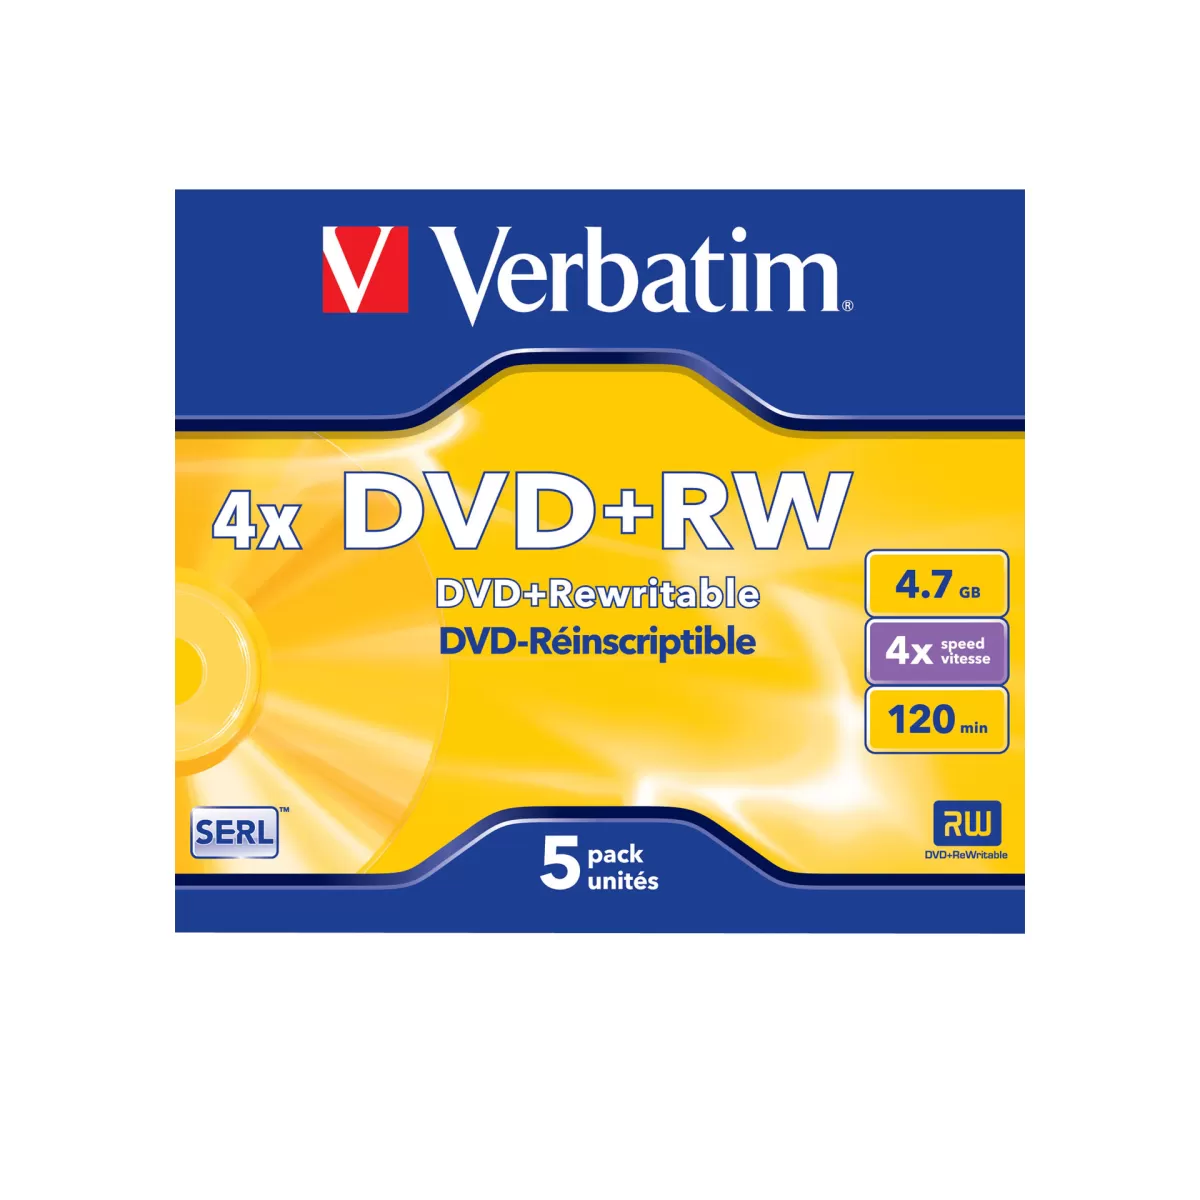 Verbatim DVD+RW, презаписваем, 4.7 GB, 4x, в кутия